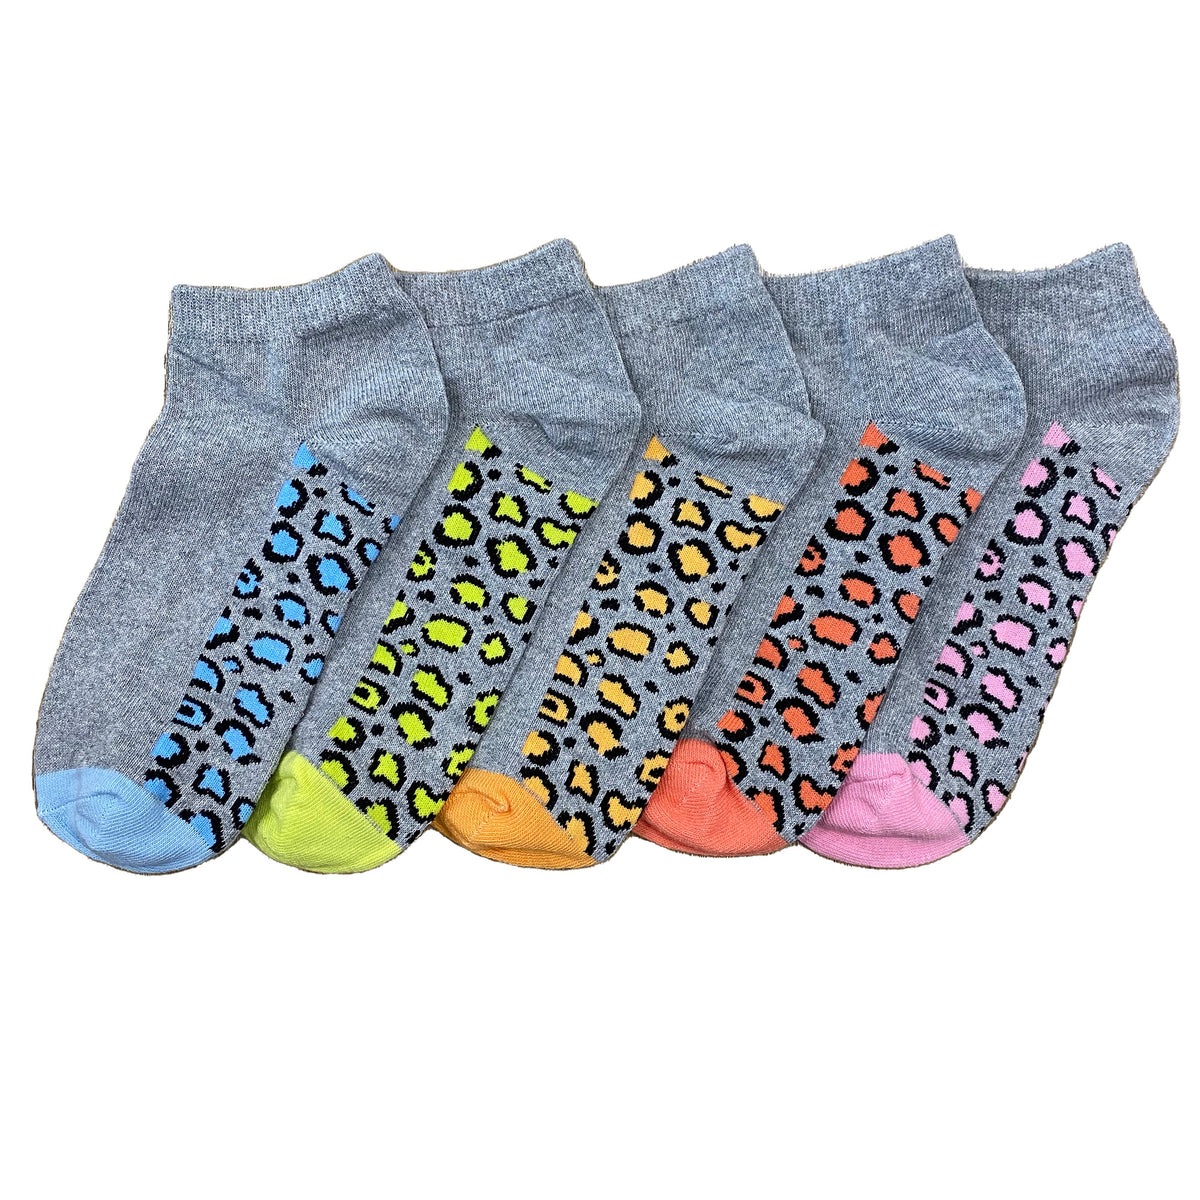 Leopard Footbed Design Trainer Liner Socks 5 pack